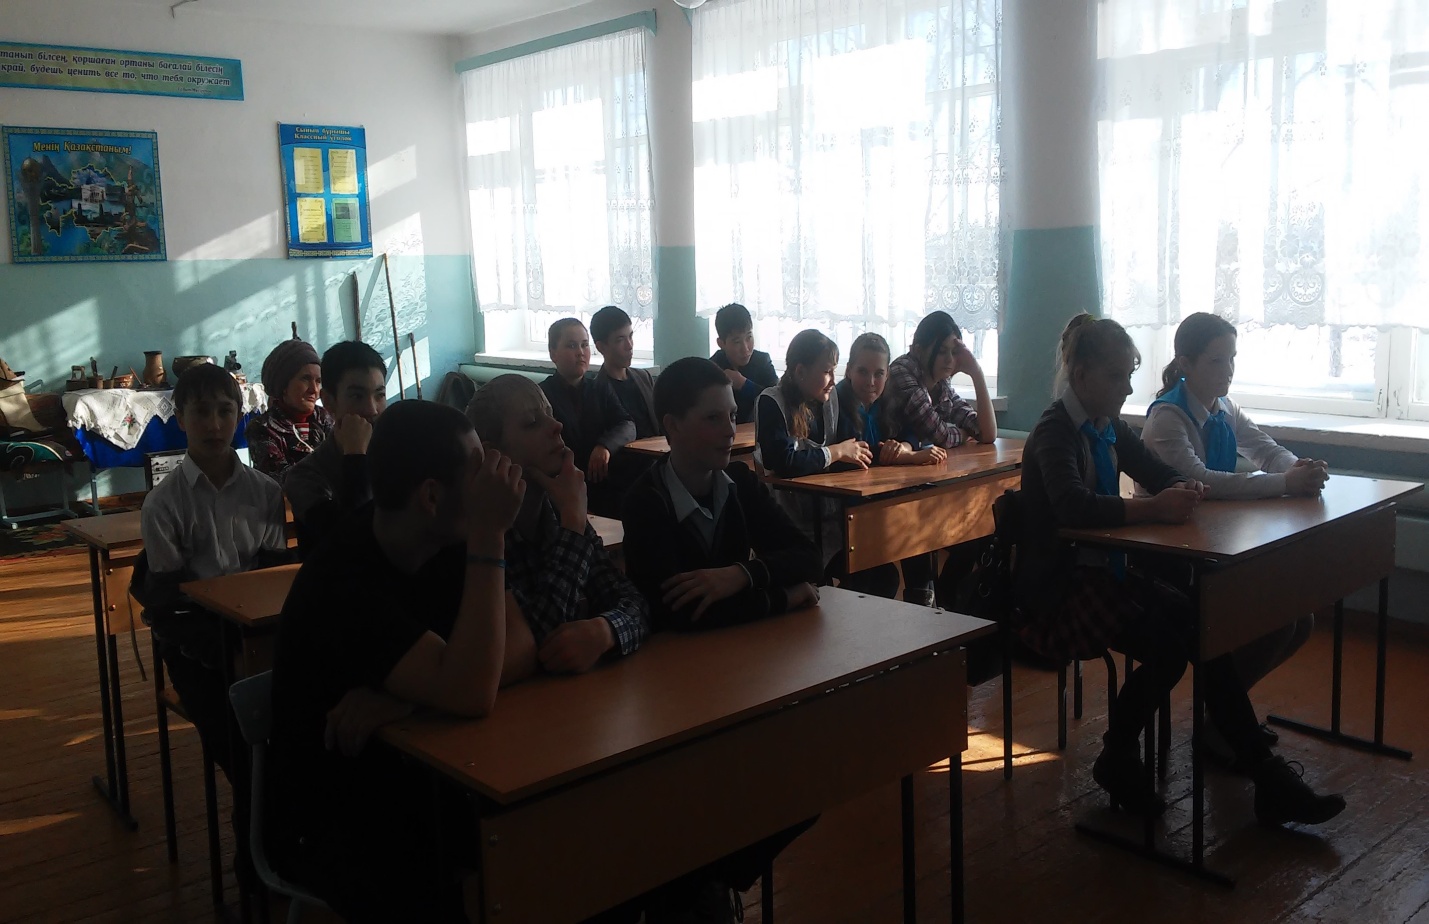 Ассамблея народов Казахстана в ГУ Заураловская средняя школа